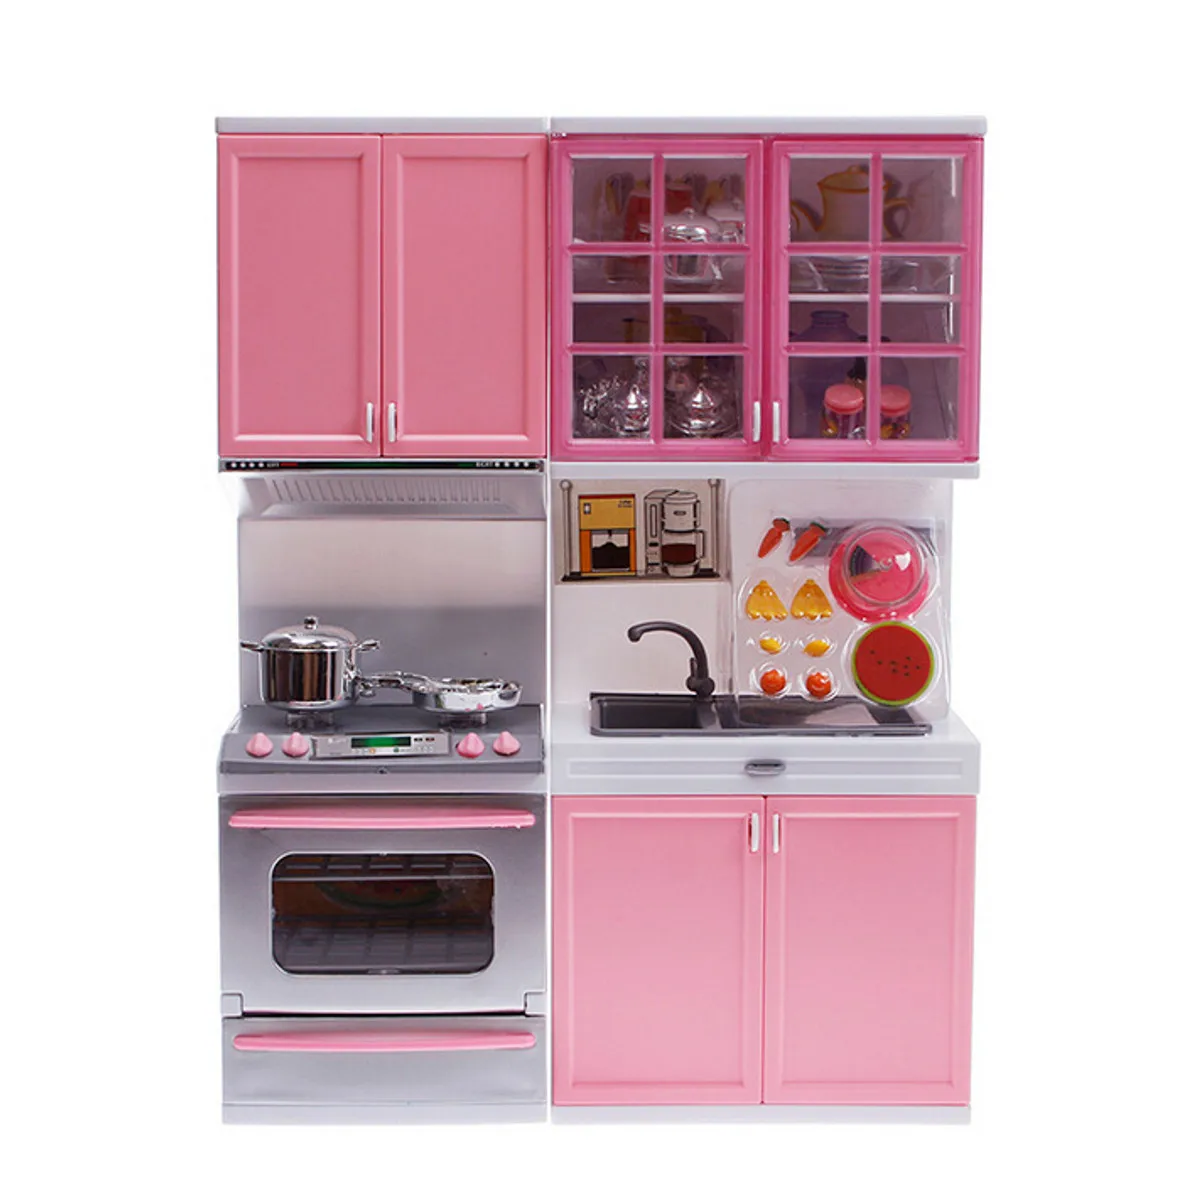 Моделирование кухонный набор Дети ролевые игры Coing шкаф инструменты посуда куклы костюмы игрушки головоломка обучающая кукла для девочек - Цвет: Розовый